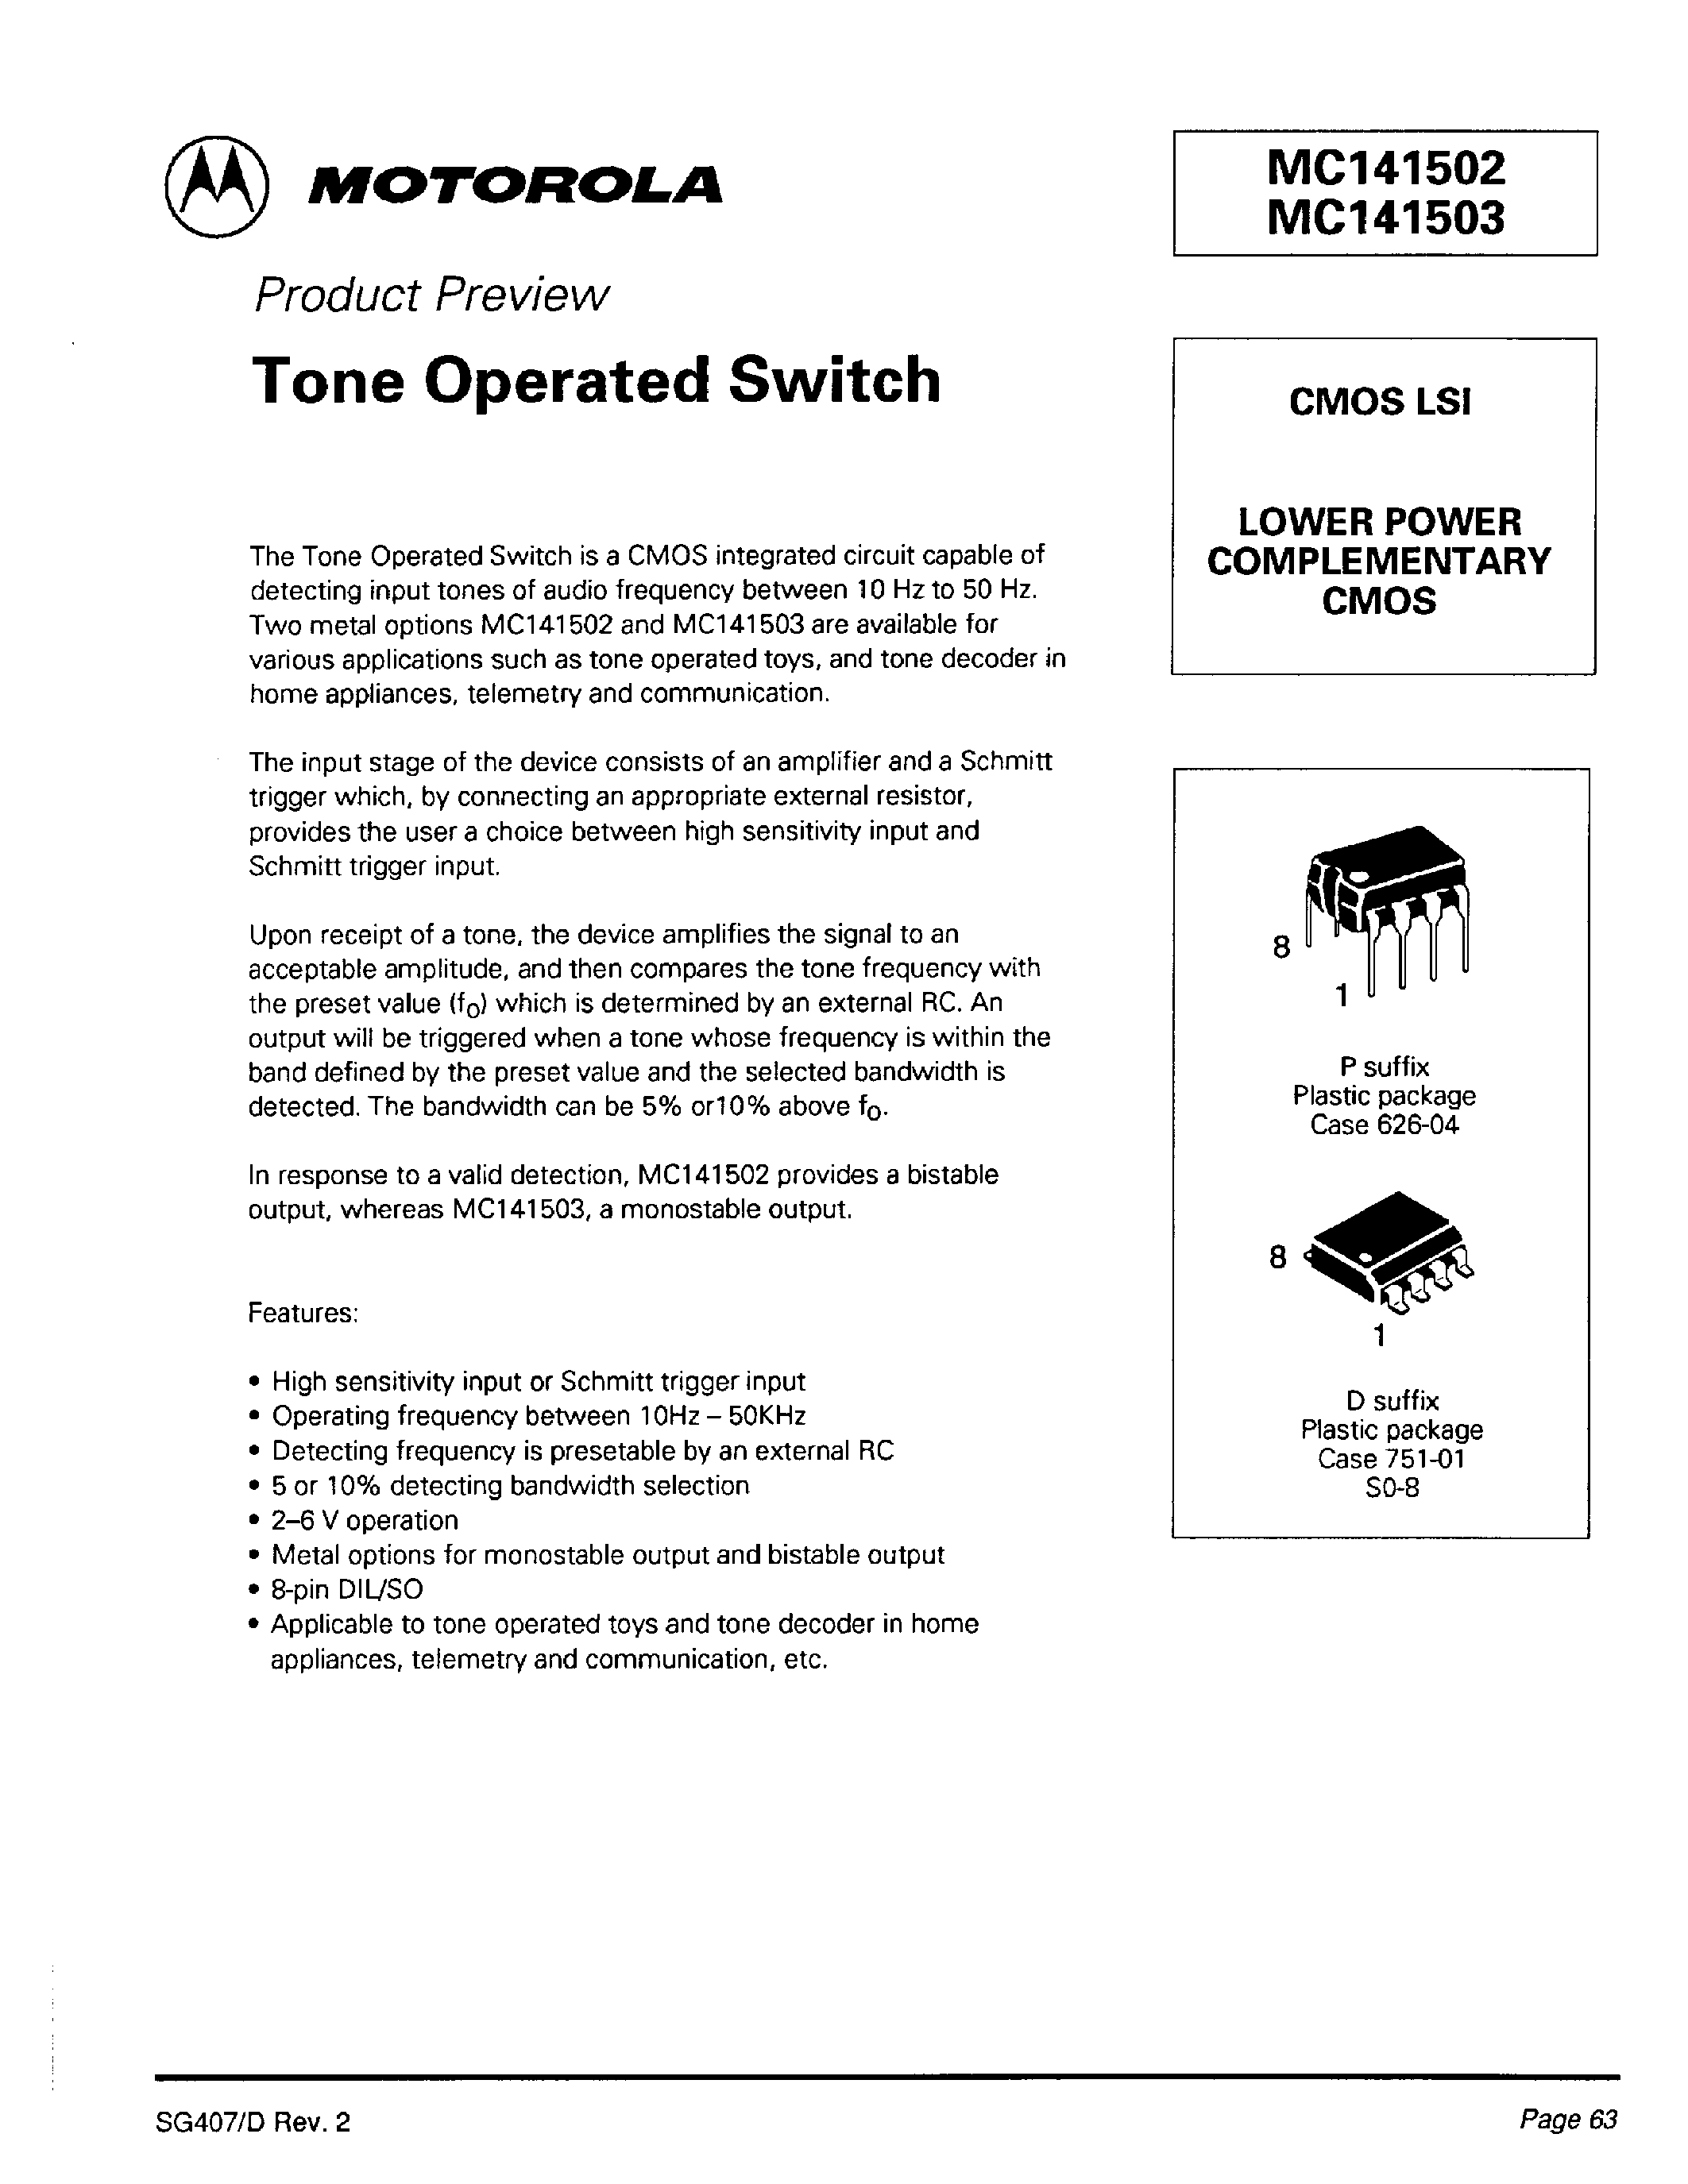 Datasheet MC141502P - Tone Operated Switch page 1